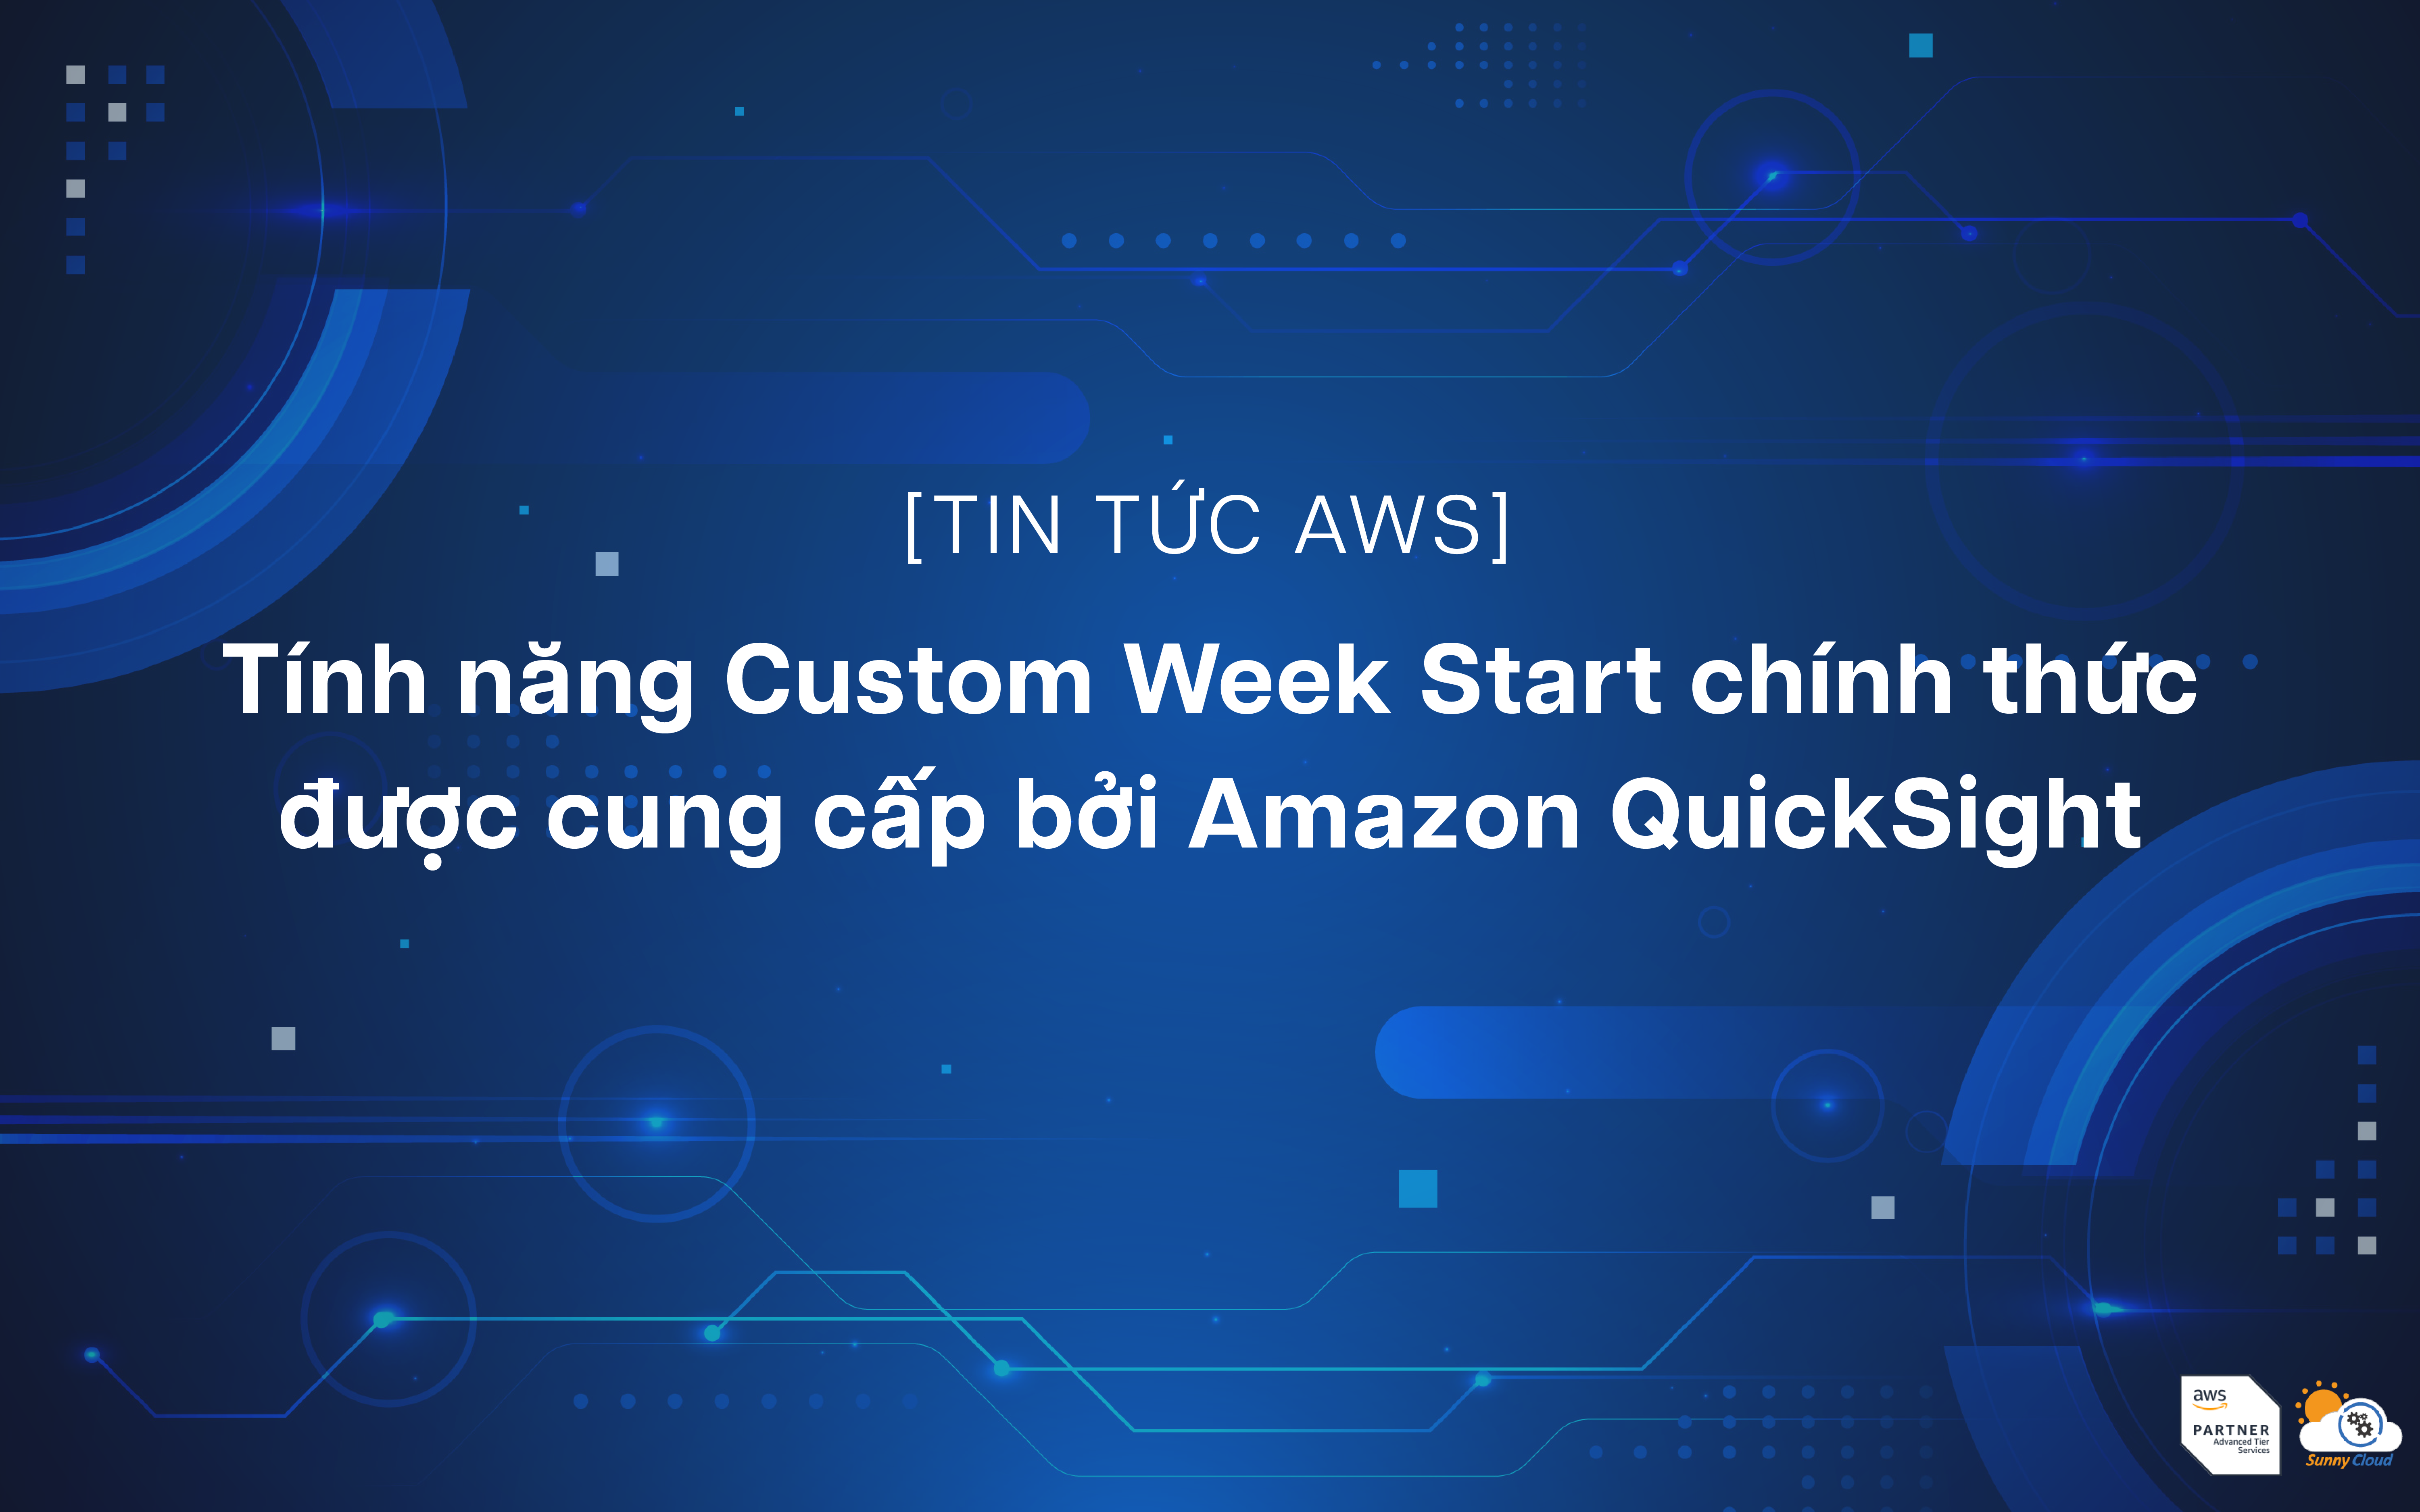 Tính năng Custom Week Start chính thức được cung cấp bởi Amazon QuickSight